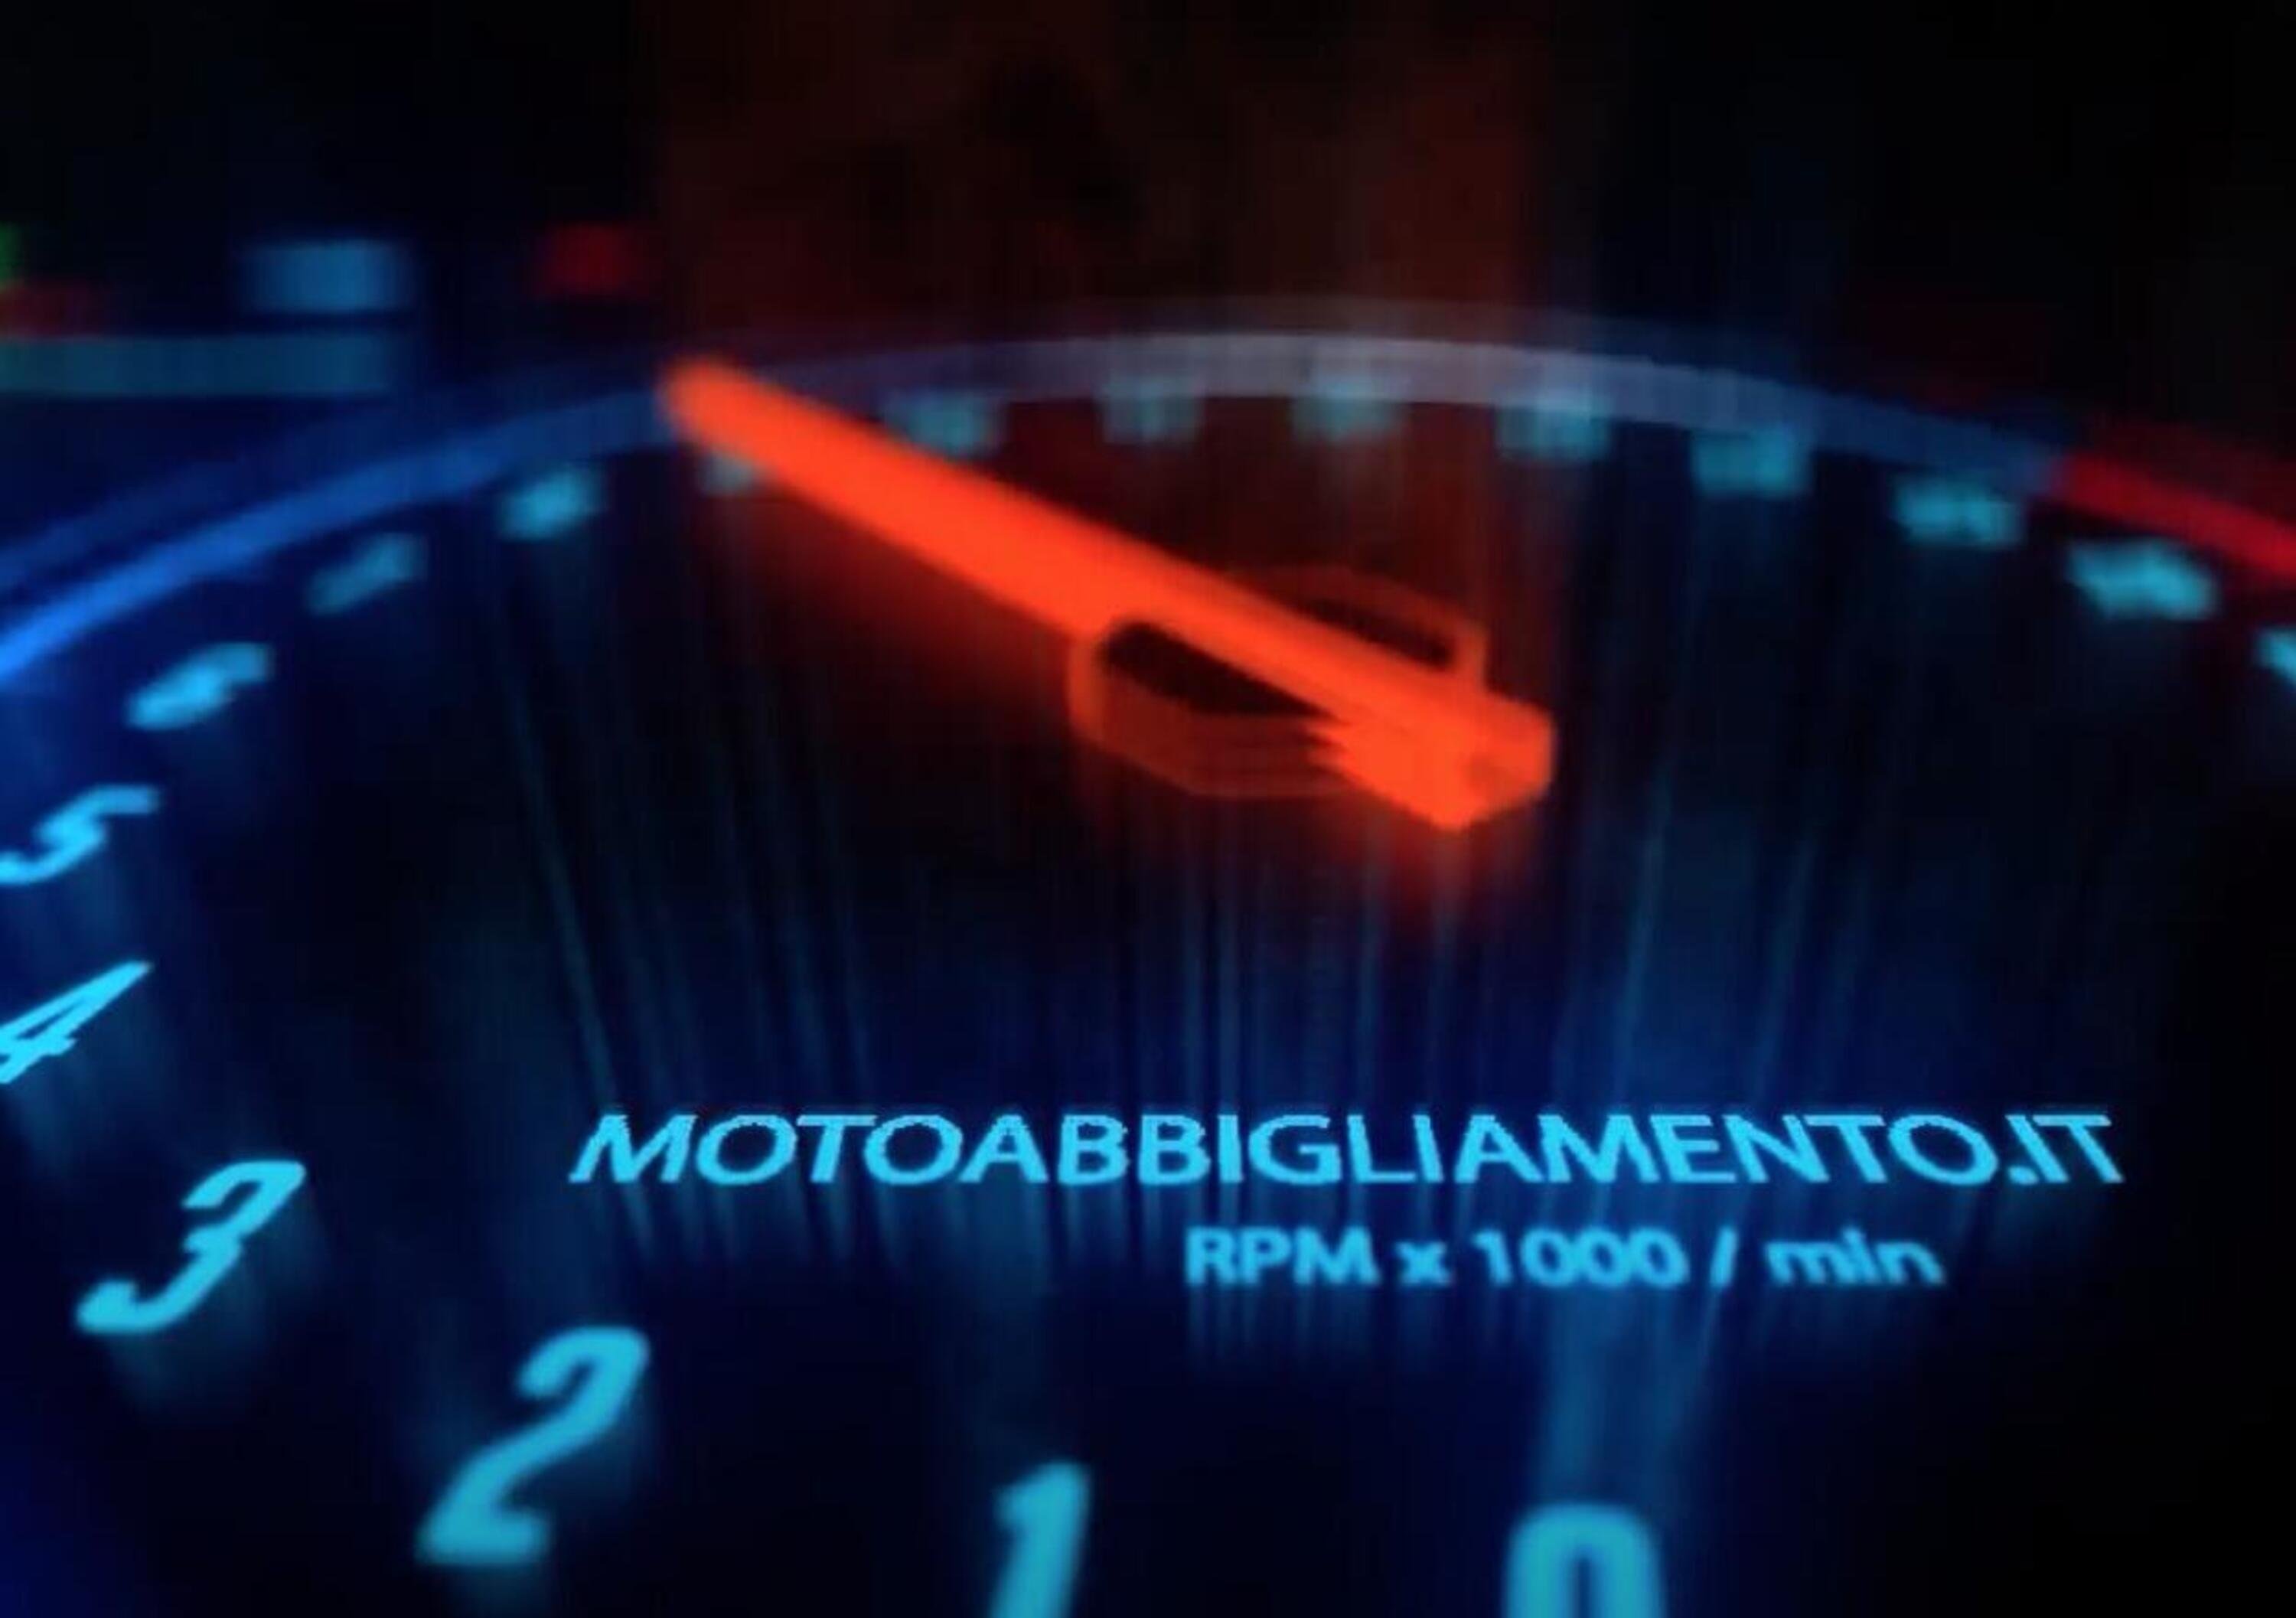 Motoabbigliamento.it trasforma i motociclisti in &ldquo;Guerrieri Della Strada&rdquo;